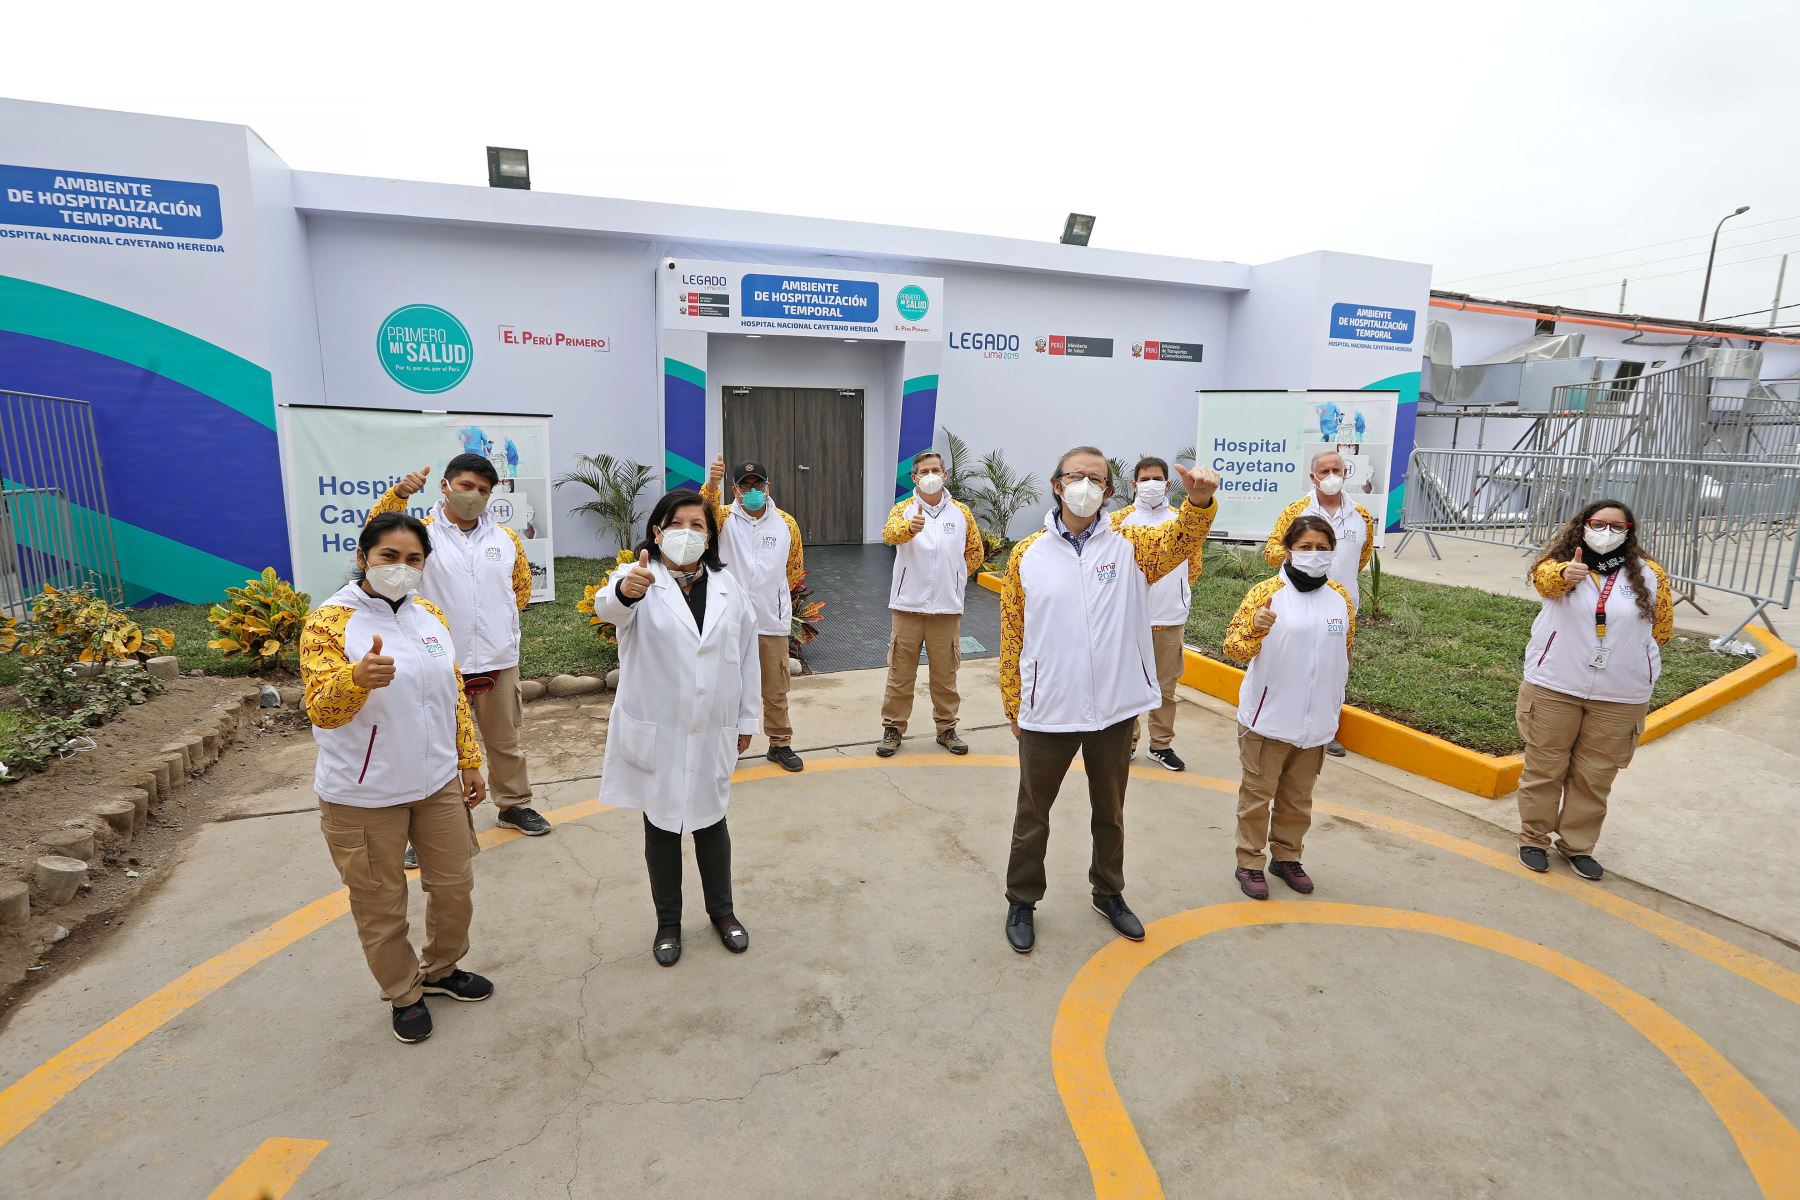 Este centro de atención se ha construido con infraestructura temporal en el interior del hospital Cayetano Heredia, ubicado en el distrito de San Martín de Porres. ANDINA/Legado Lima 2019